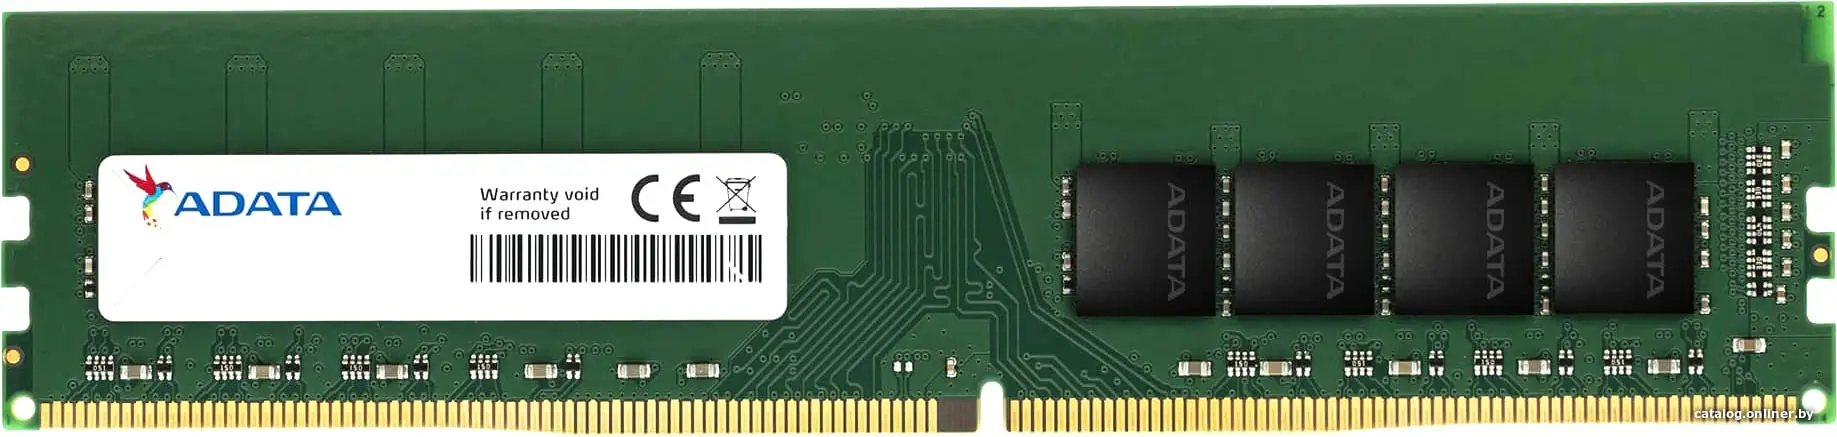 Купить Оперативная память 16Gb AData Premier AD4U266616G19-SGN, DDR IV, PC-21300, 2666MHz, цена, опт и розница